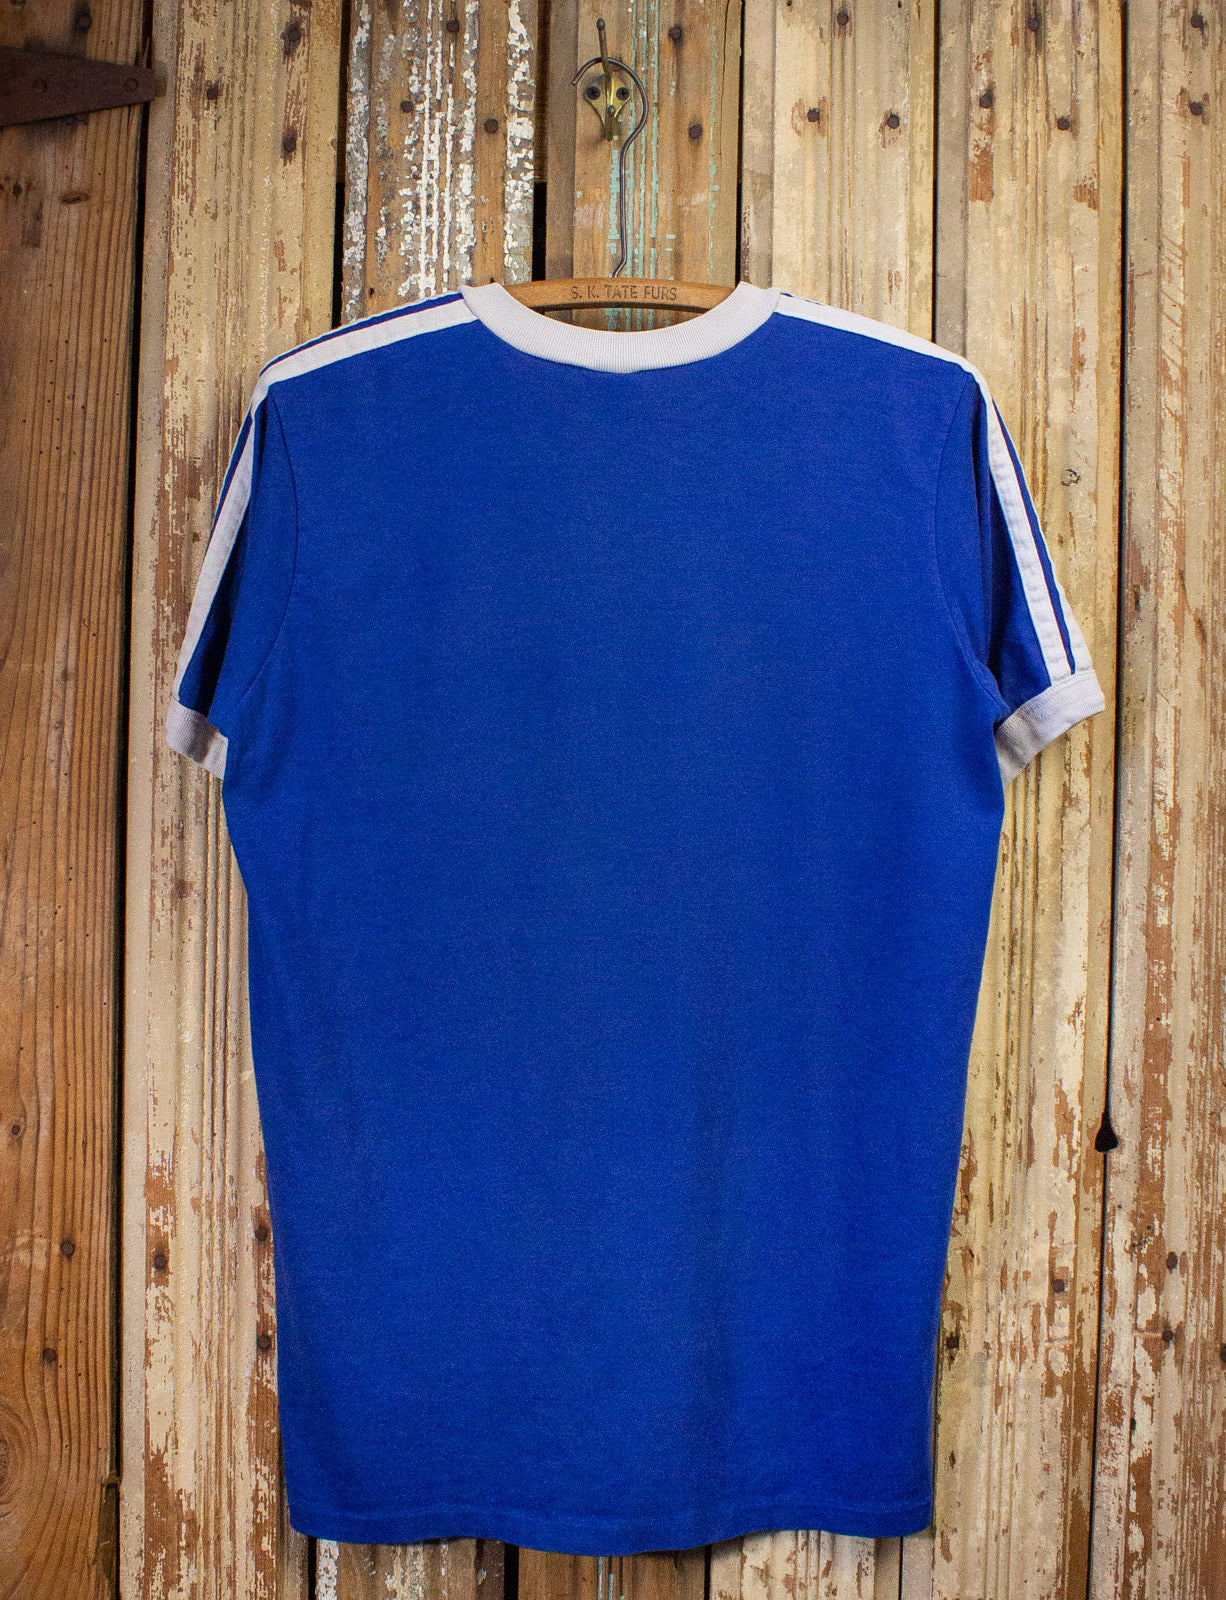 Vintage Adidas V Neck Ringer Graphic T Shirt 80s Blue Large